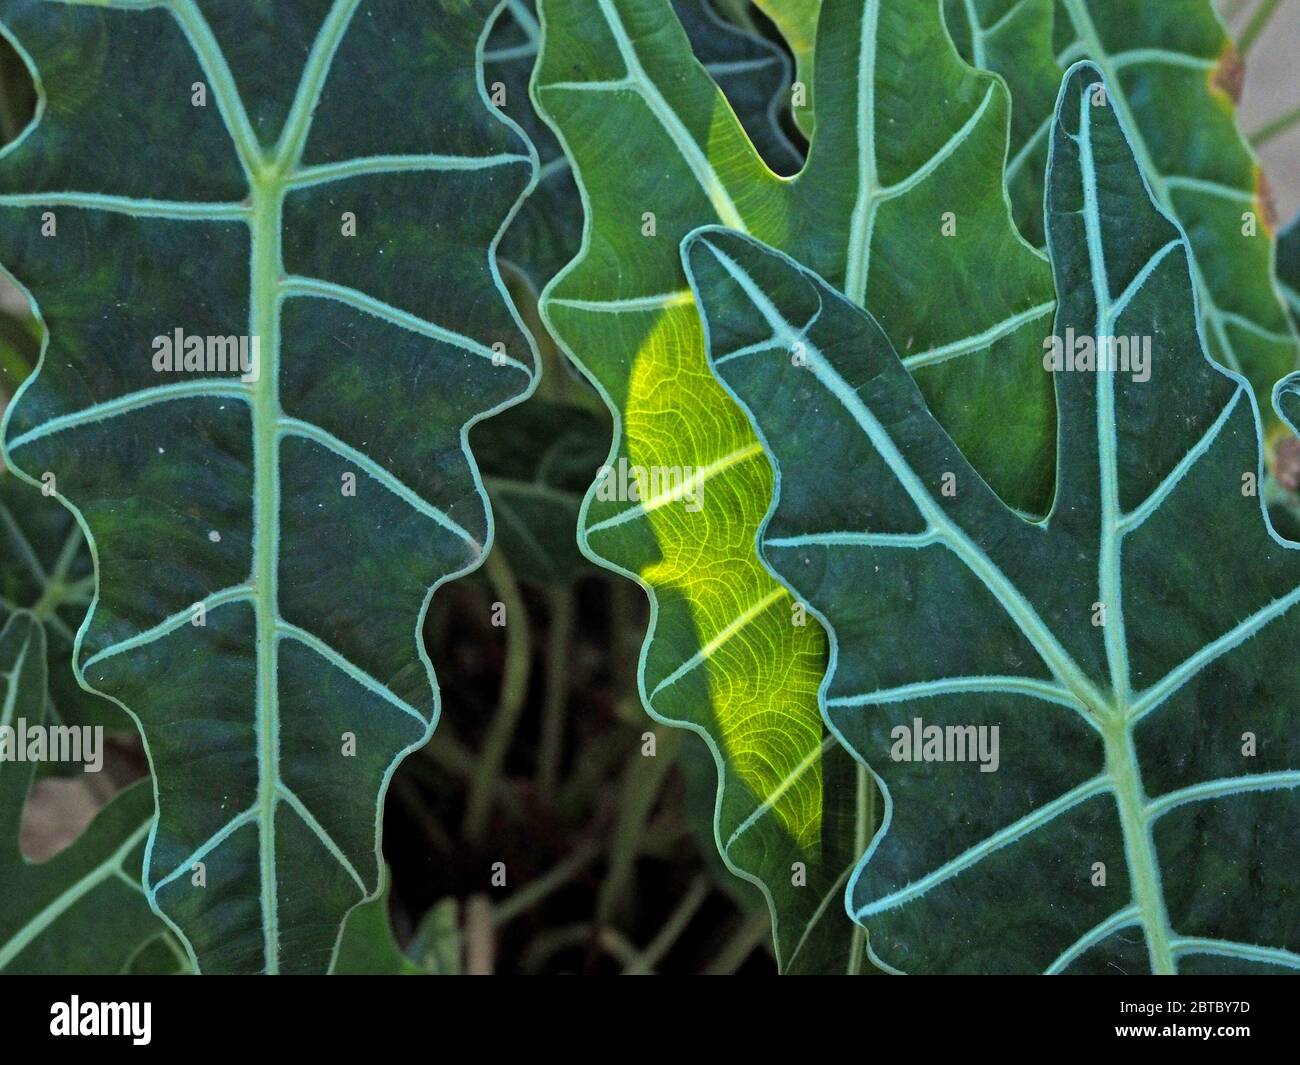 Les nervures blanches fortes et les bords ondulés de feuilles vertes superposées de différentes nuances créent un motif frappant dans le jardin tropical de Malindi, Kenya, Afrique Banque D'Images